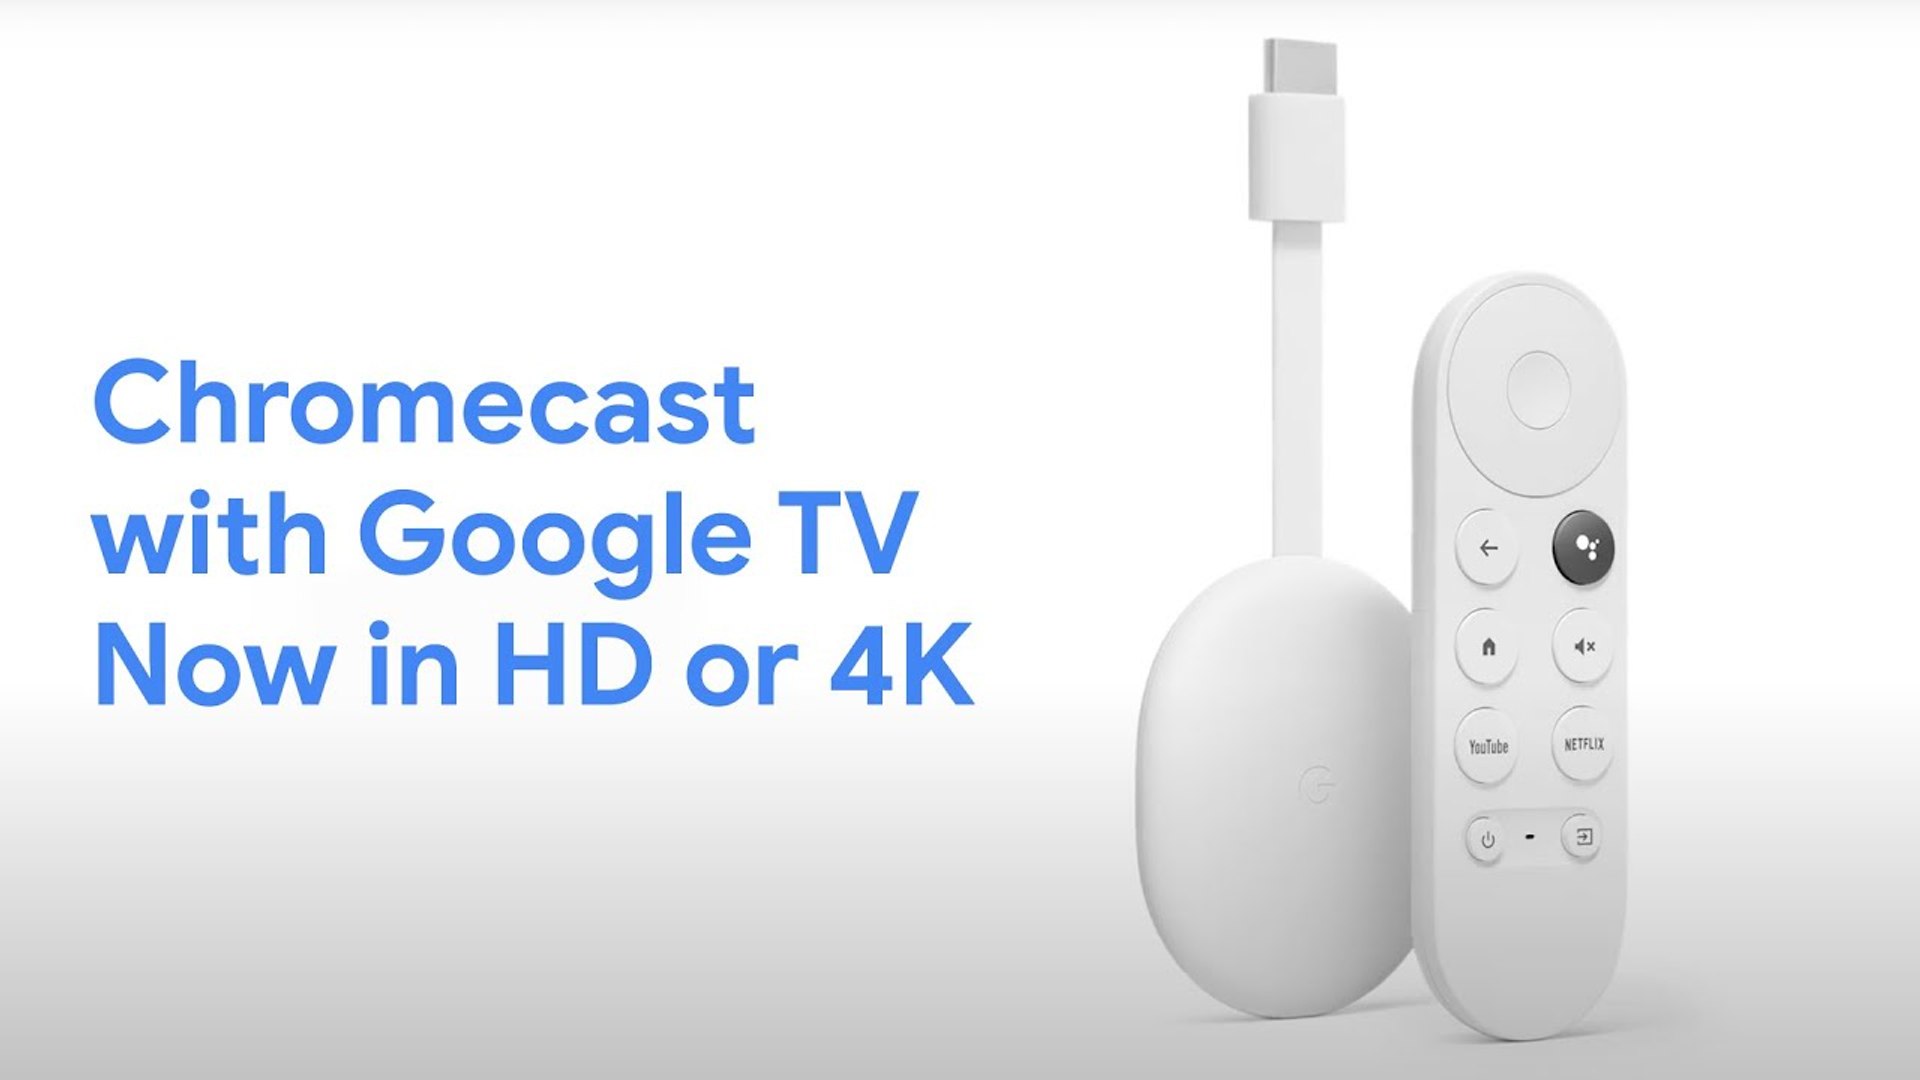 Nuevo Chromecast con Google TV, ahora en HD o 4K - Vídeo Dailymotion